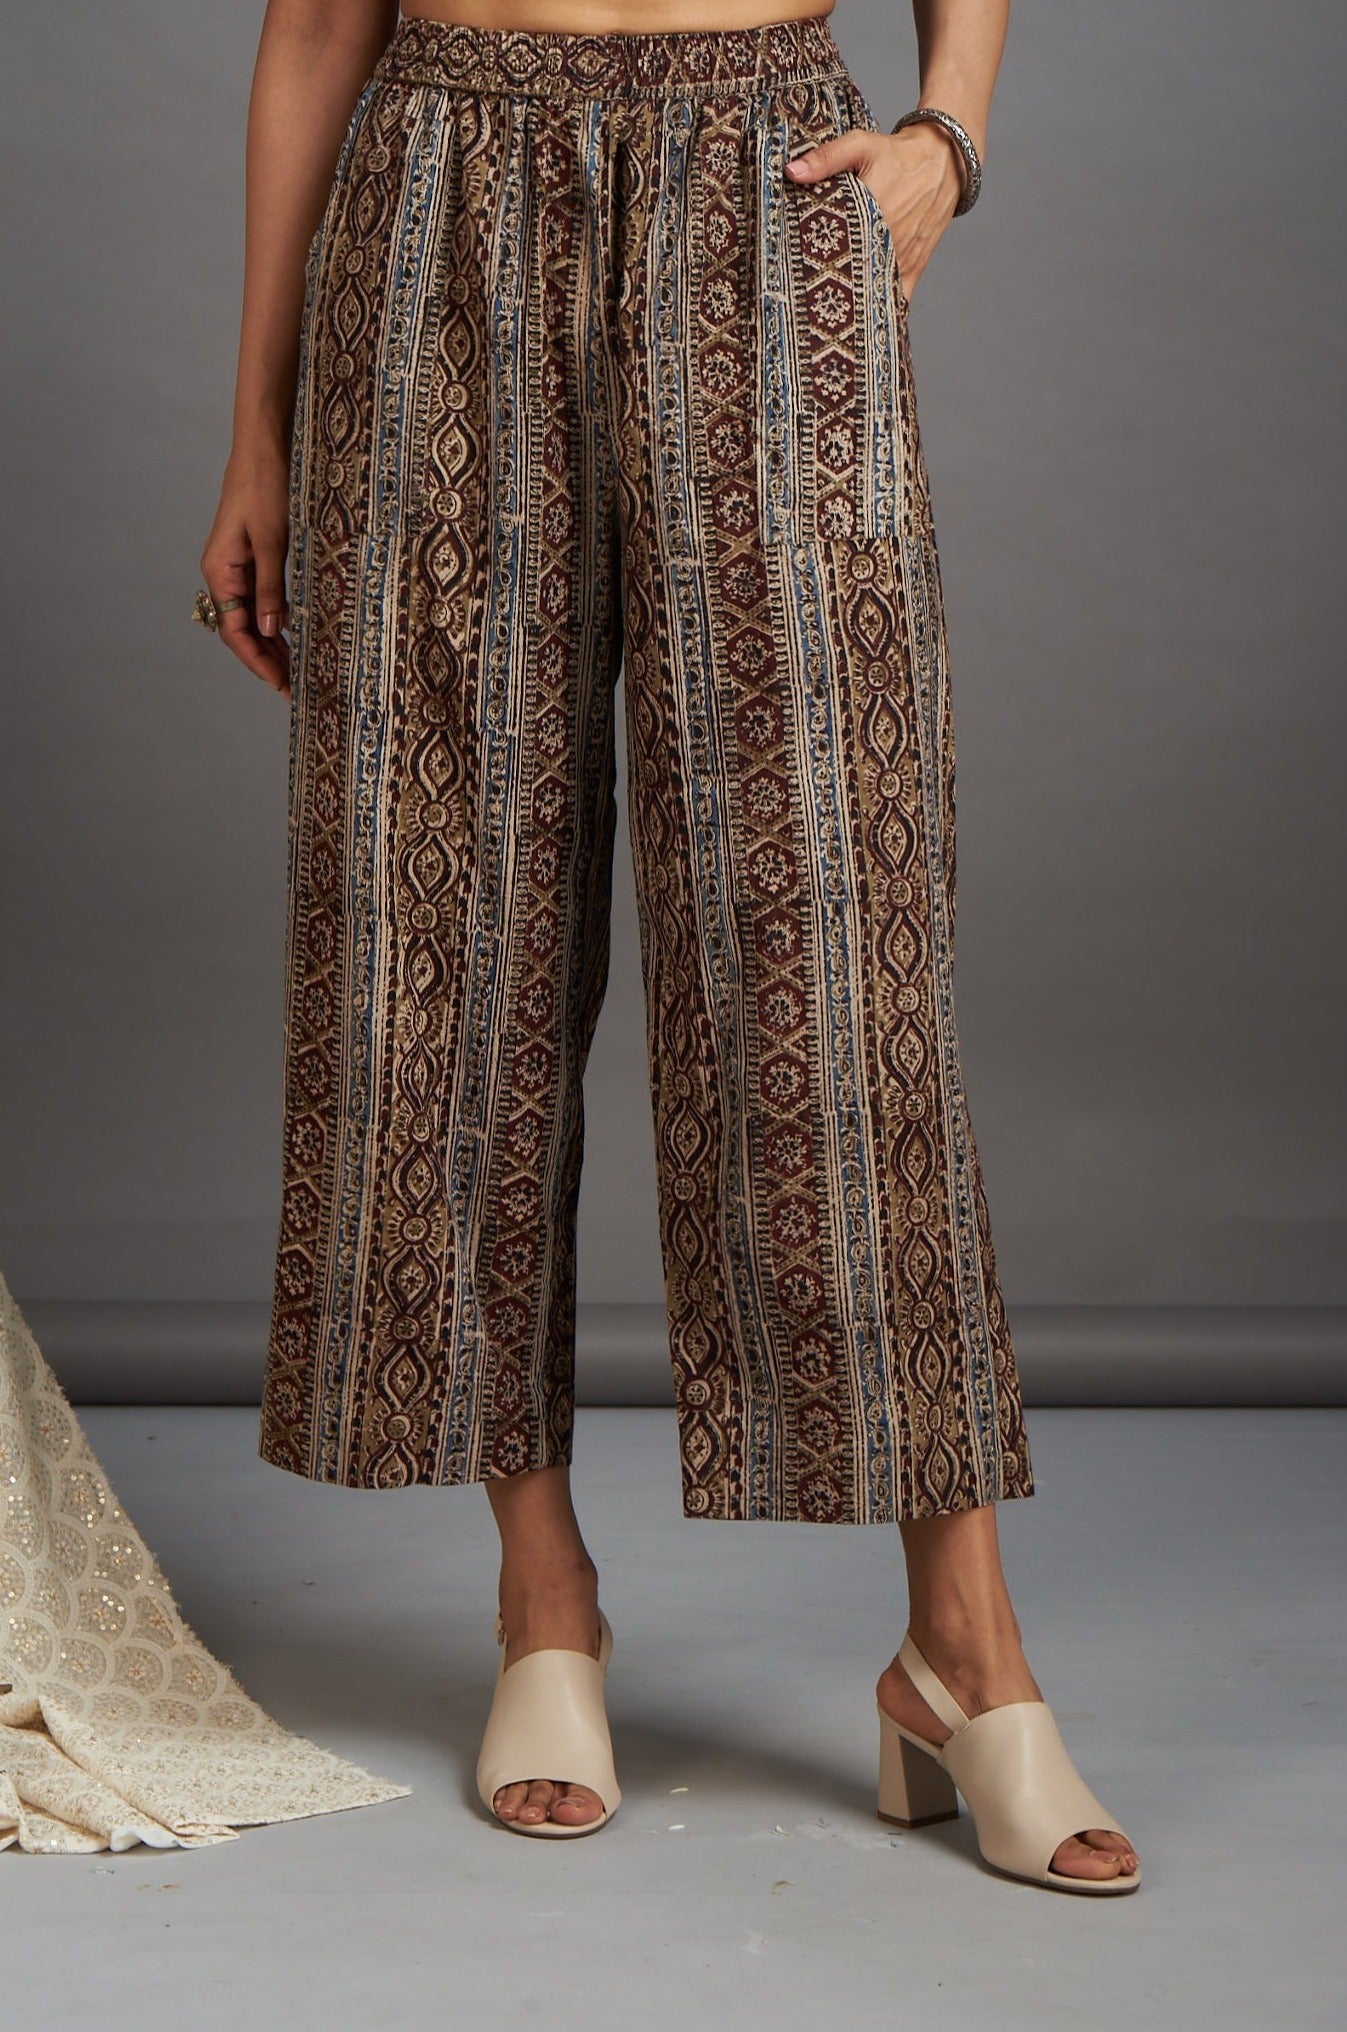 comfort fit cotton printed pants - brown kalamkari lines - maati crafts